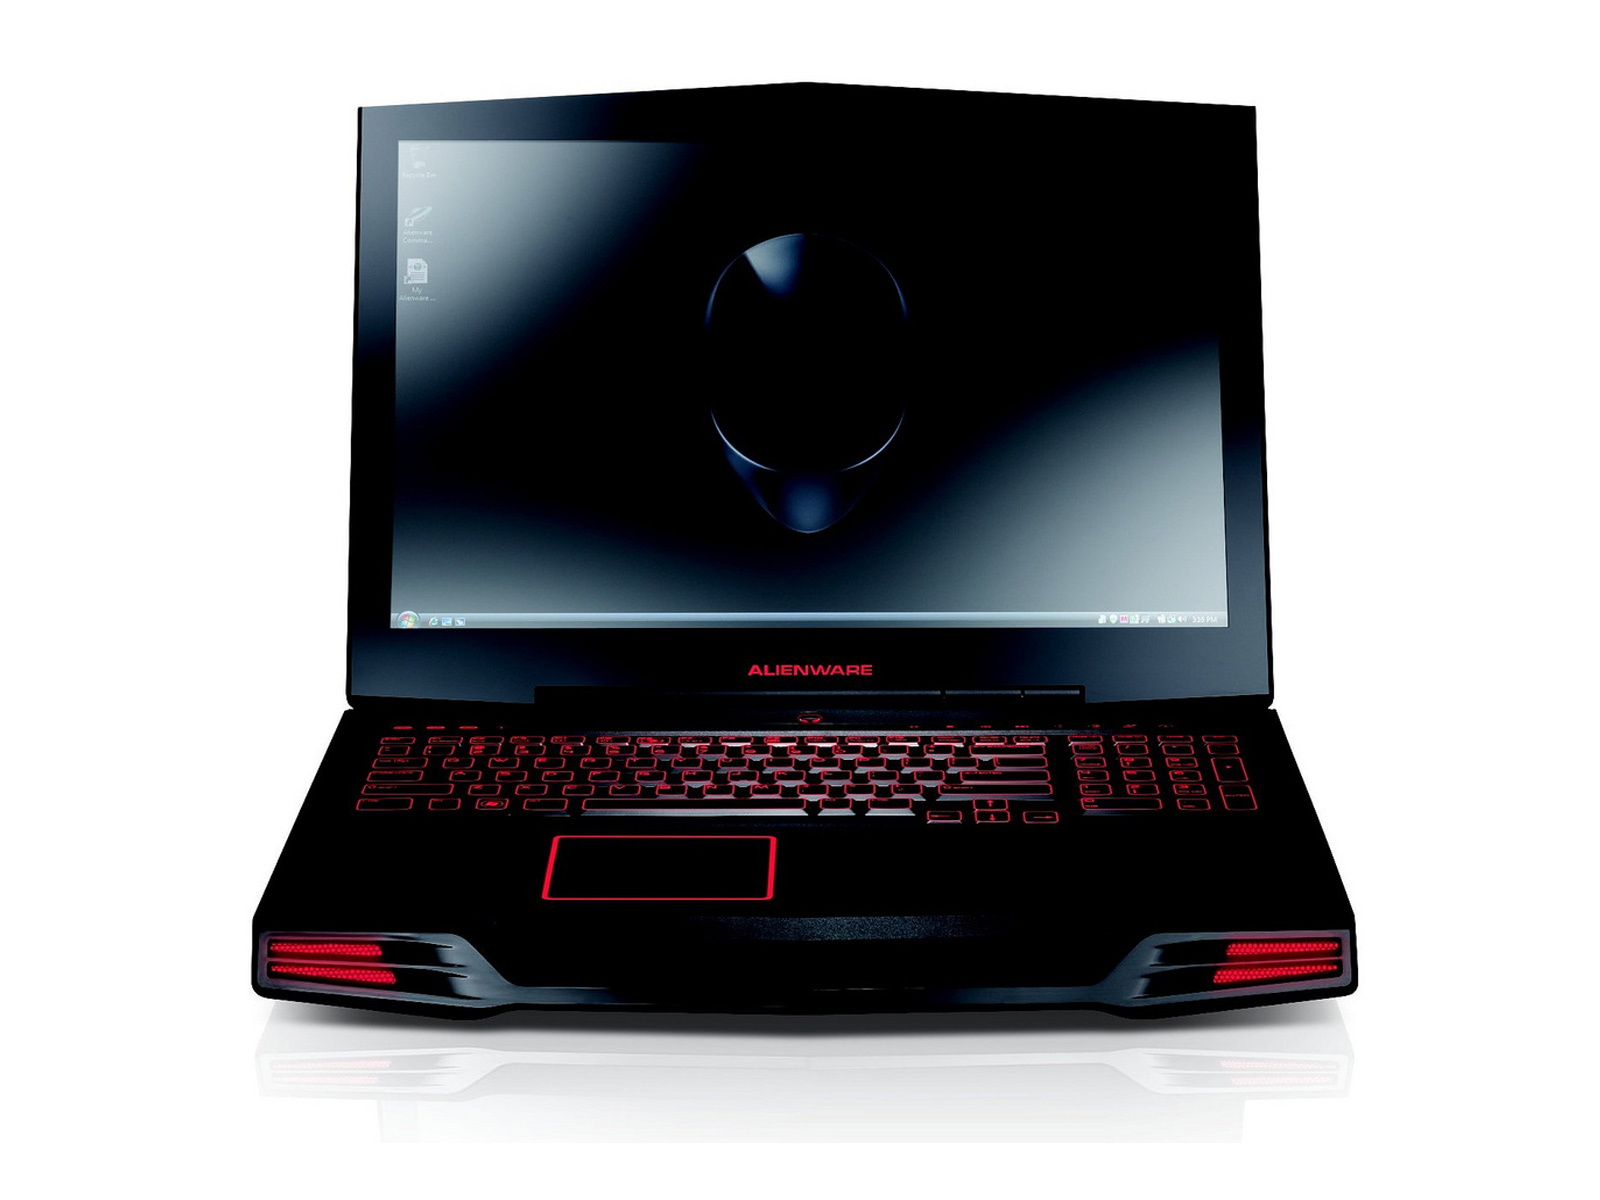 Free Alienware Gaming Laptop, Computer Desktop Wallpapers, - Dell Alienware M17x - HD Wallpaper 